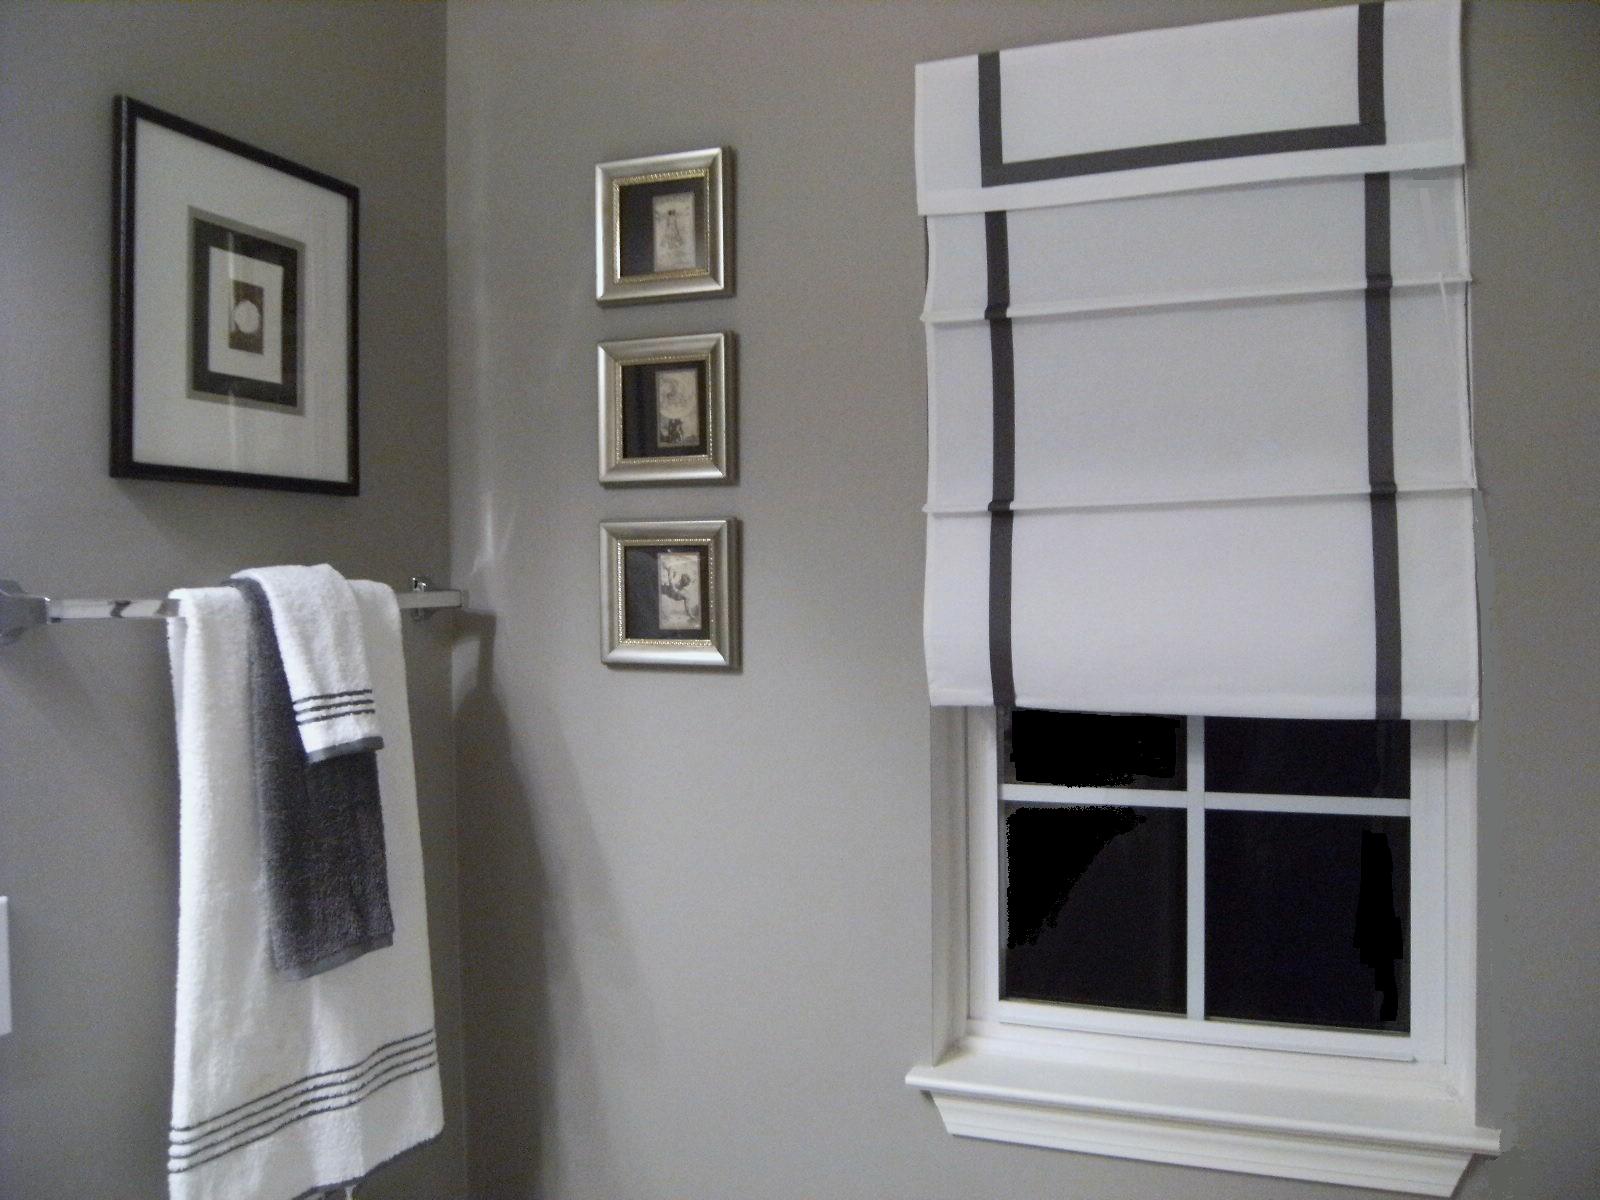 Plain Grey Bathroom Color Ideas Paint Colors For A Back Decorating